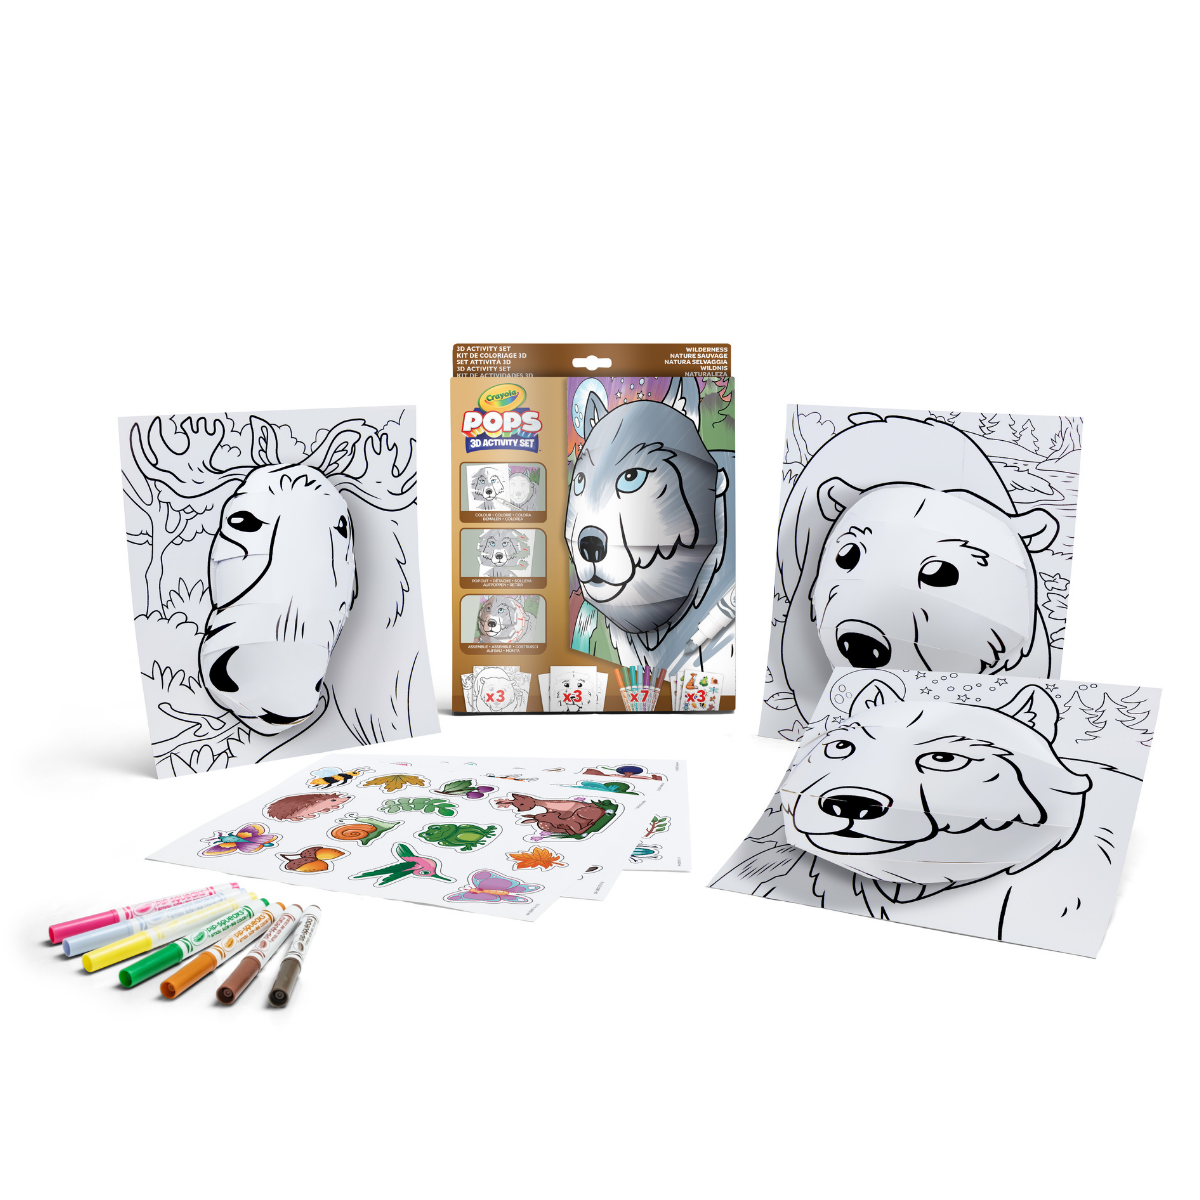 Crayola pops 3d activity set lupo e natura selvaggia – colora e crea disegni tridimensionali - CRAYOLA